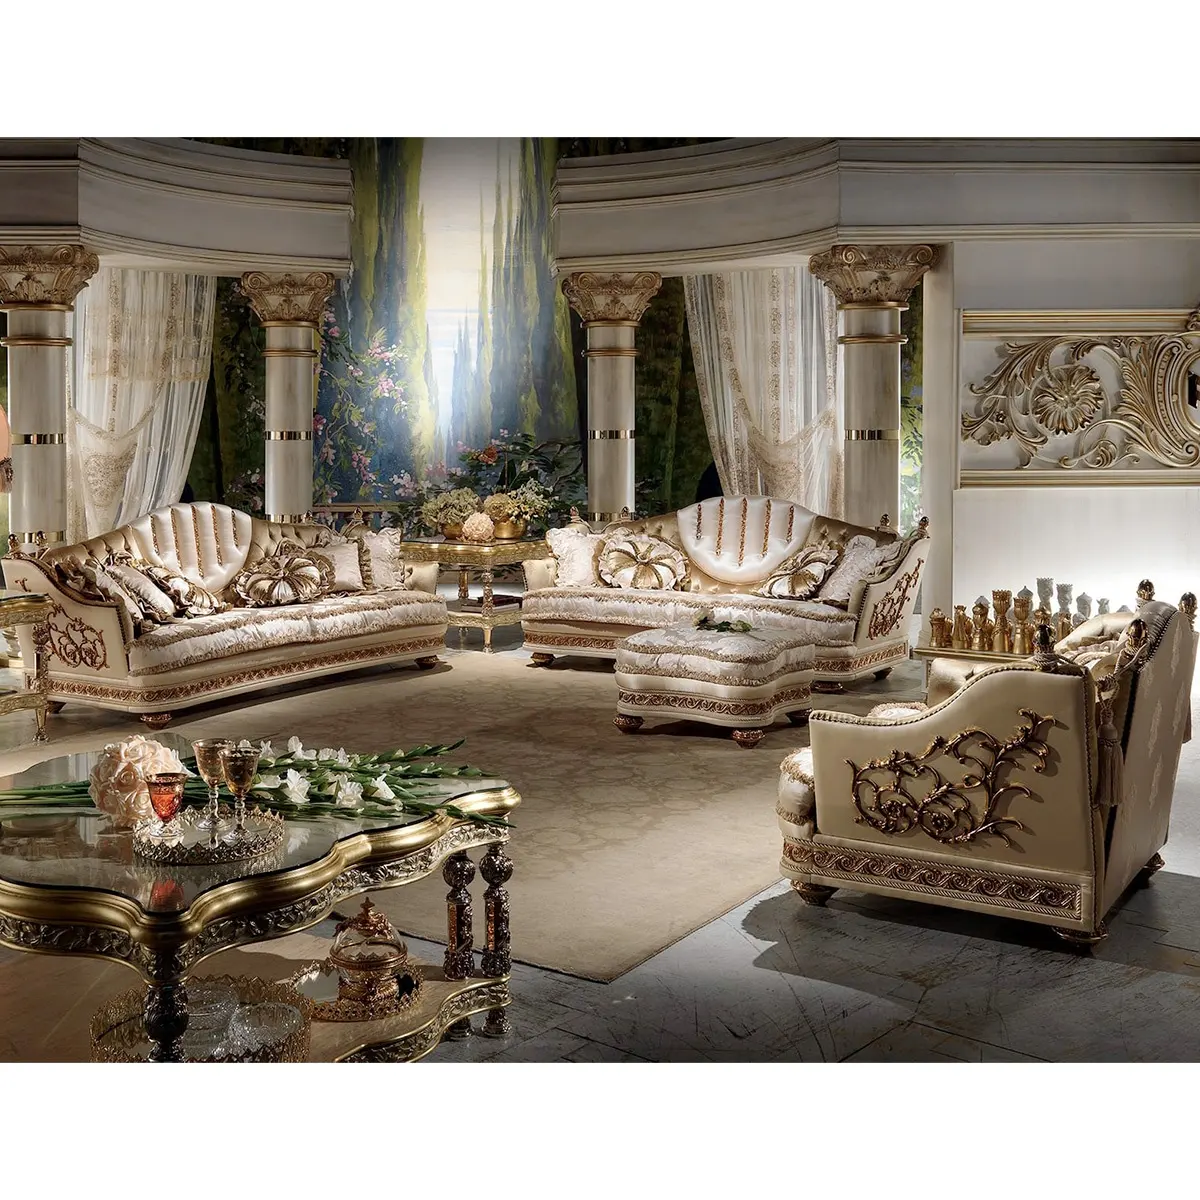 Yeni model tasarımları antika kraliyet oturma odası mobilya kanepe seti ile iyi fiyatlar ve güzel resimler